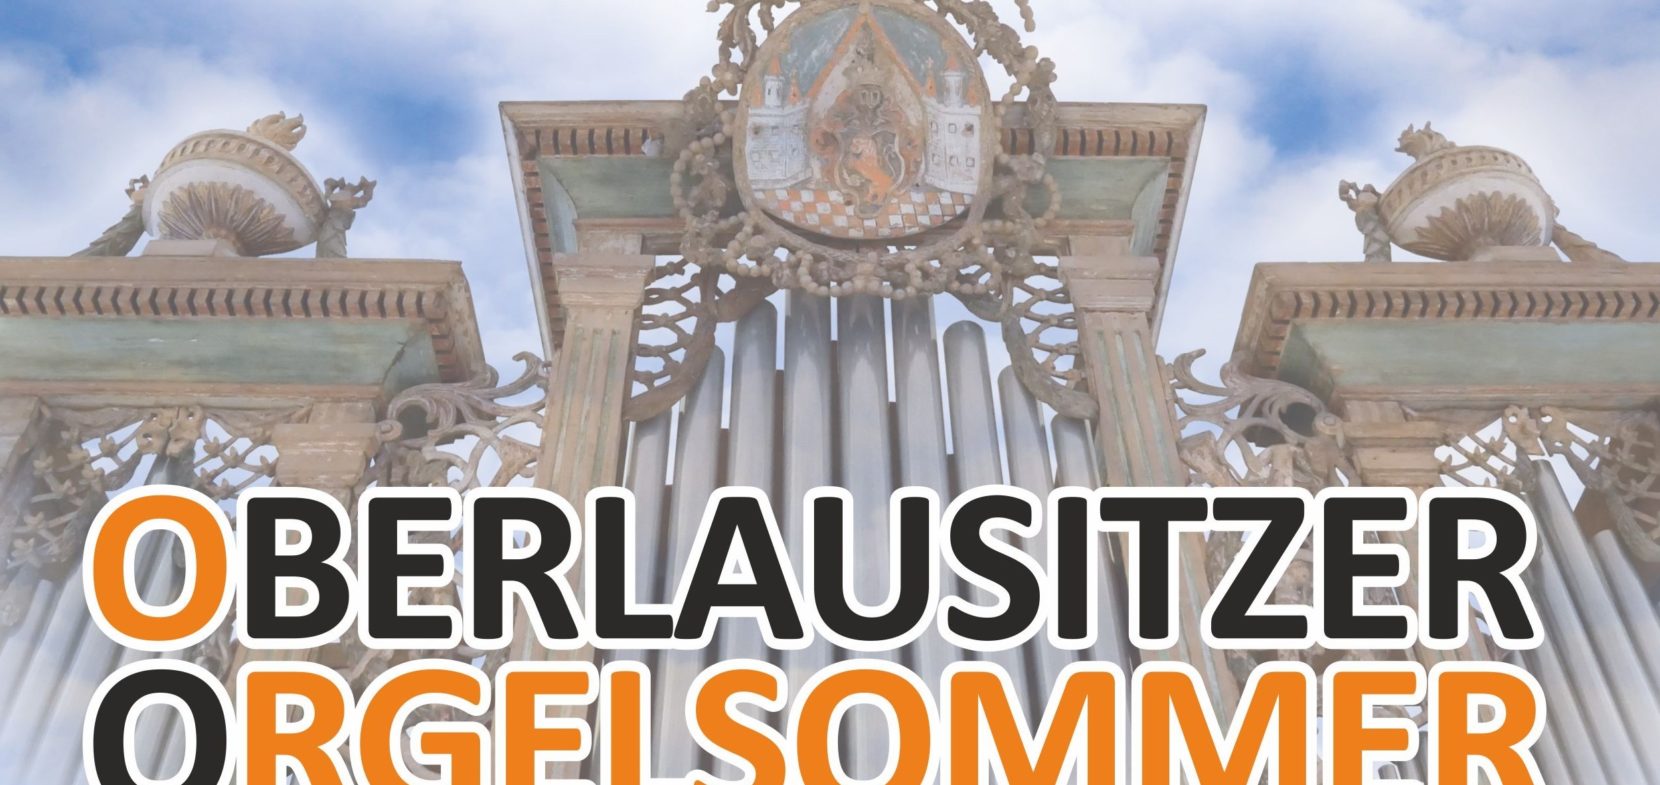 Oberlausitzer Orgelsommer 2023